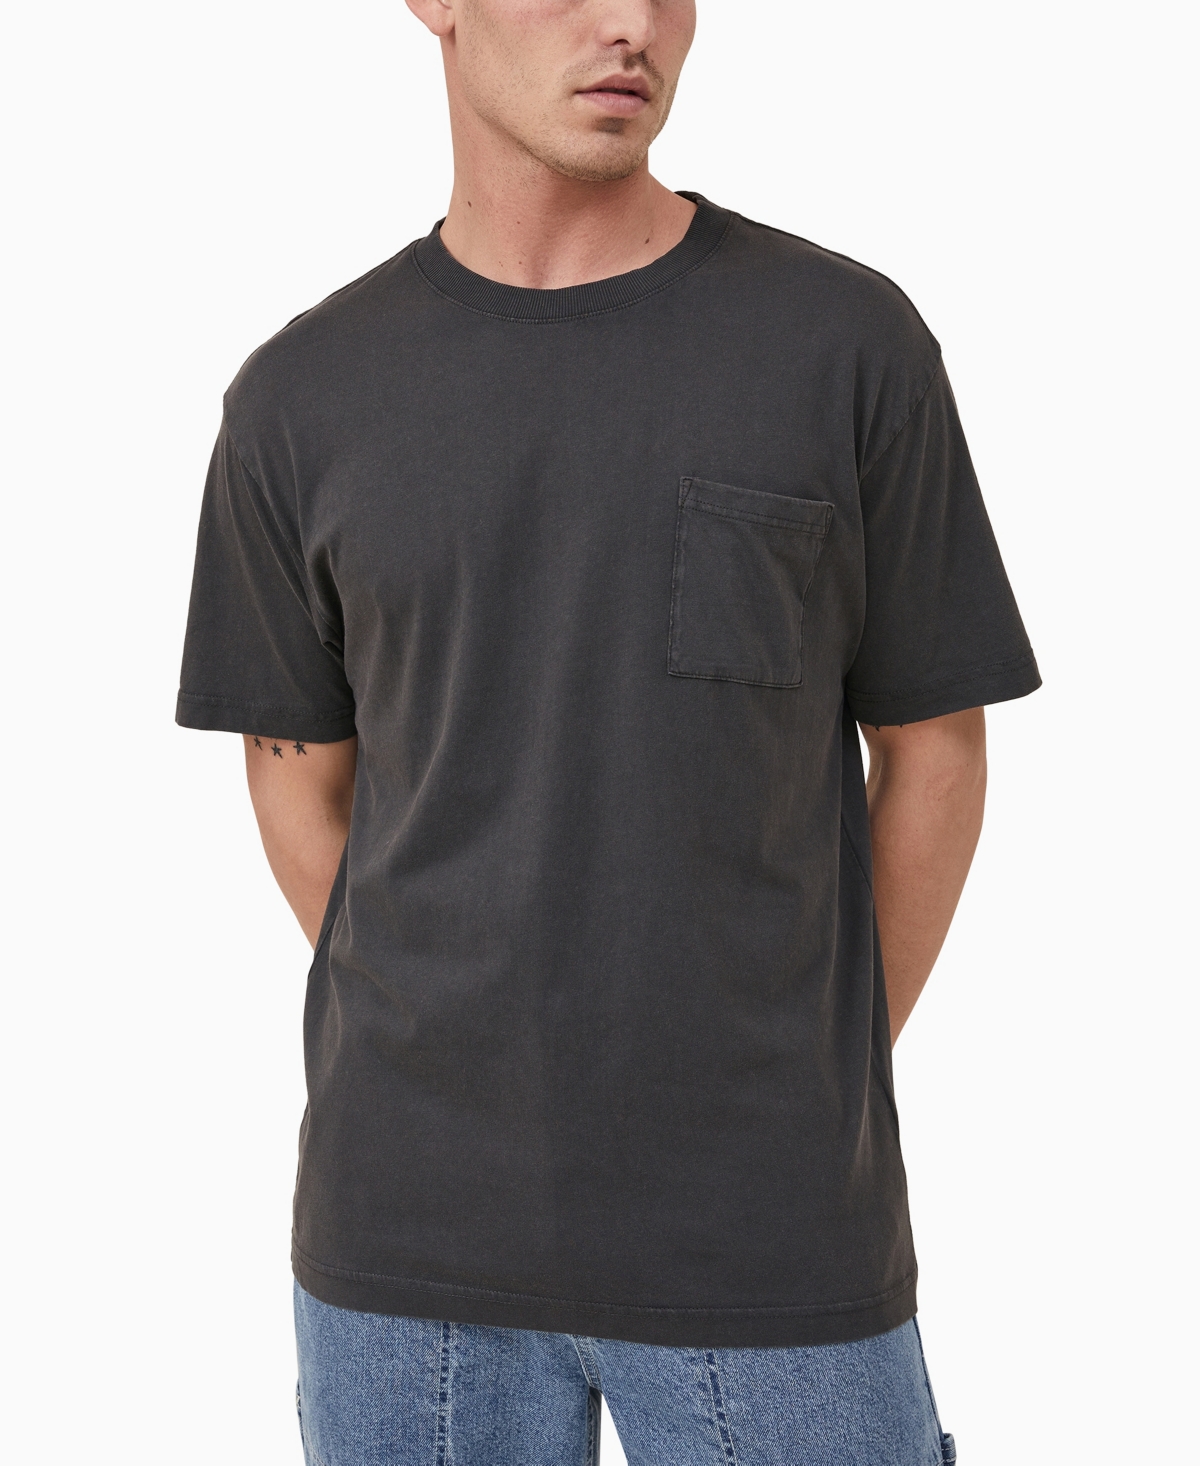 Men's Loose Fit T-Shirt - Washed Black